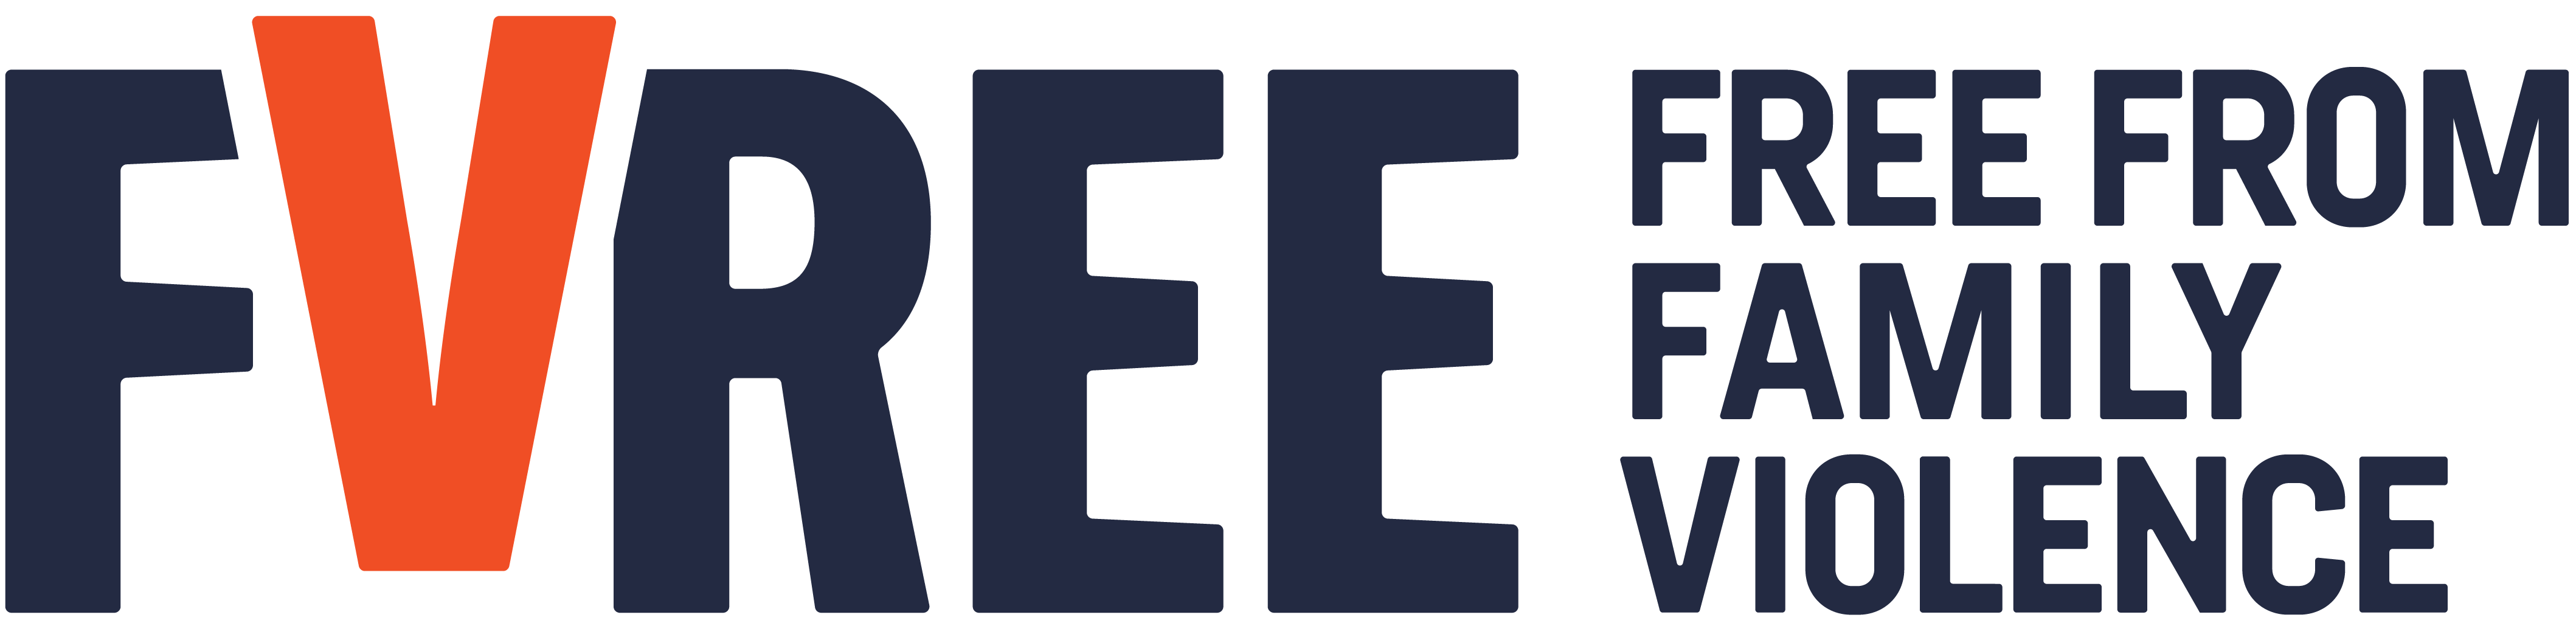 FVREE logo